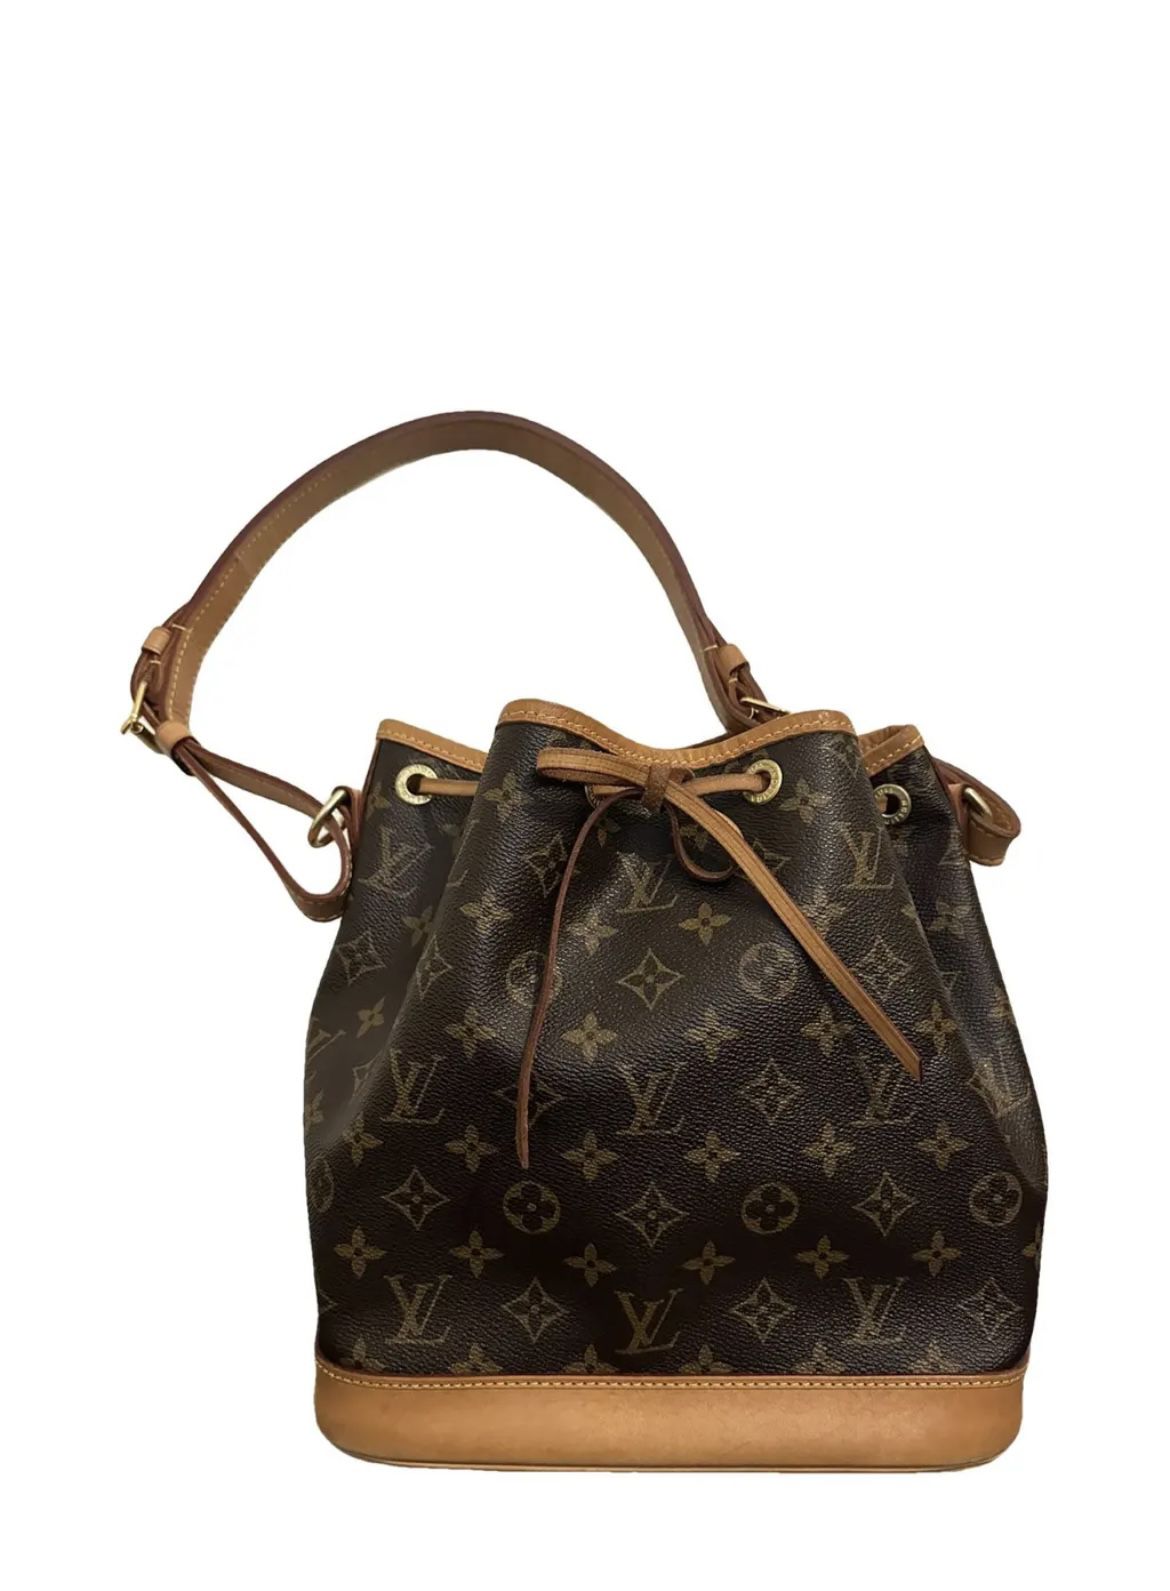 Authentic Louis Vuitton Noe Patent Leather Handbag 